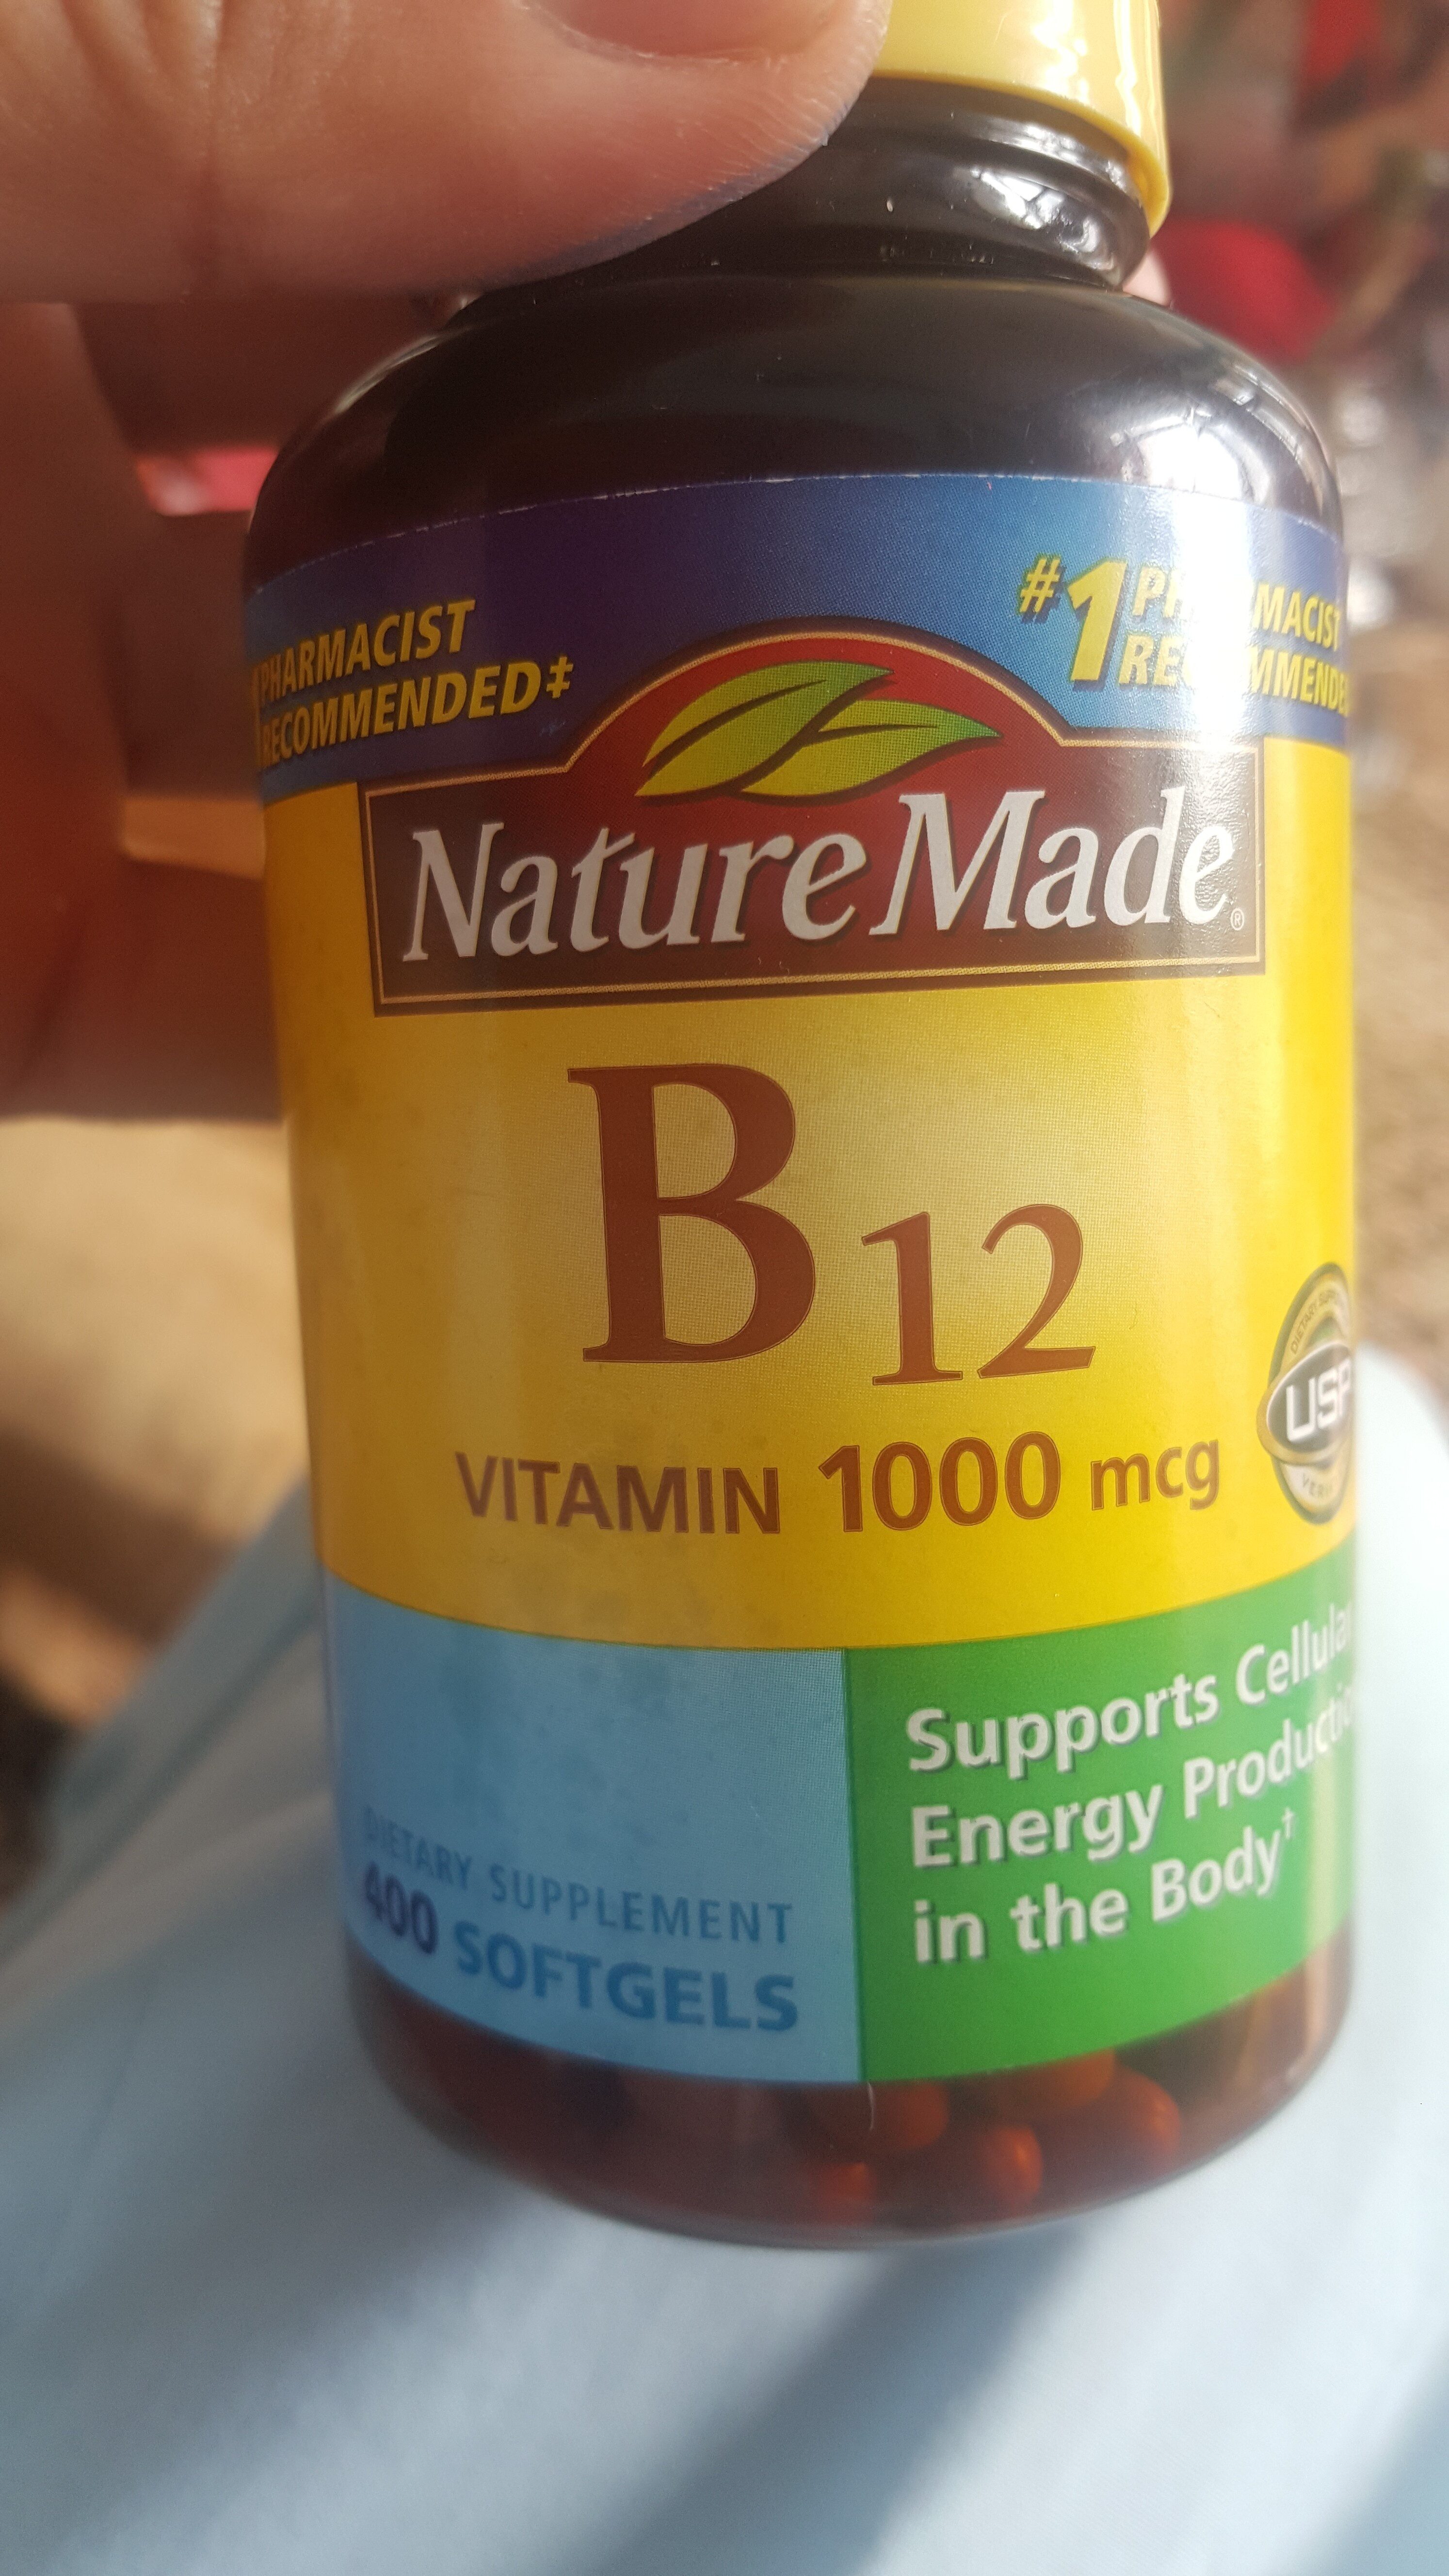 B12 1000mcg - Ingredients - en